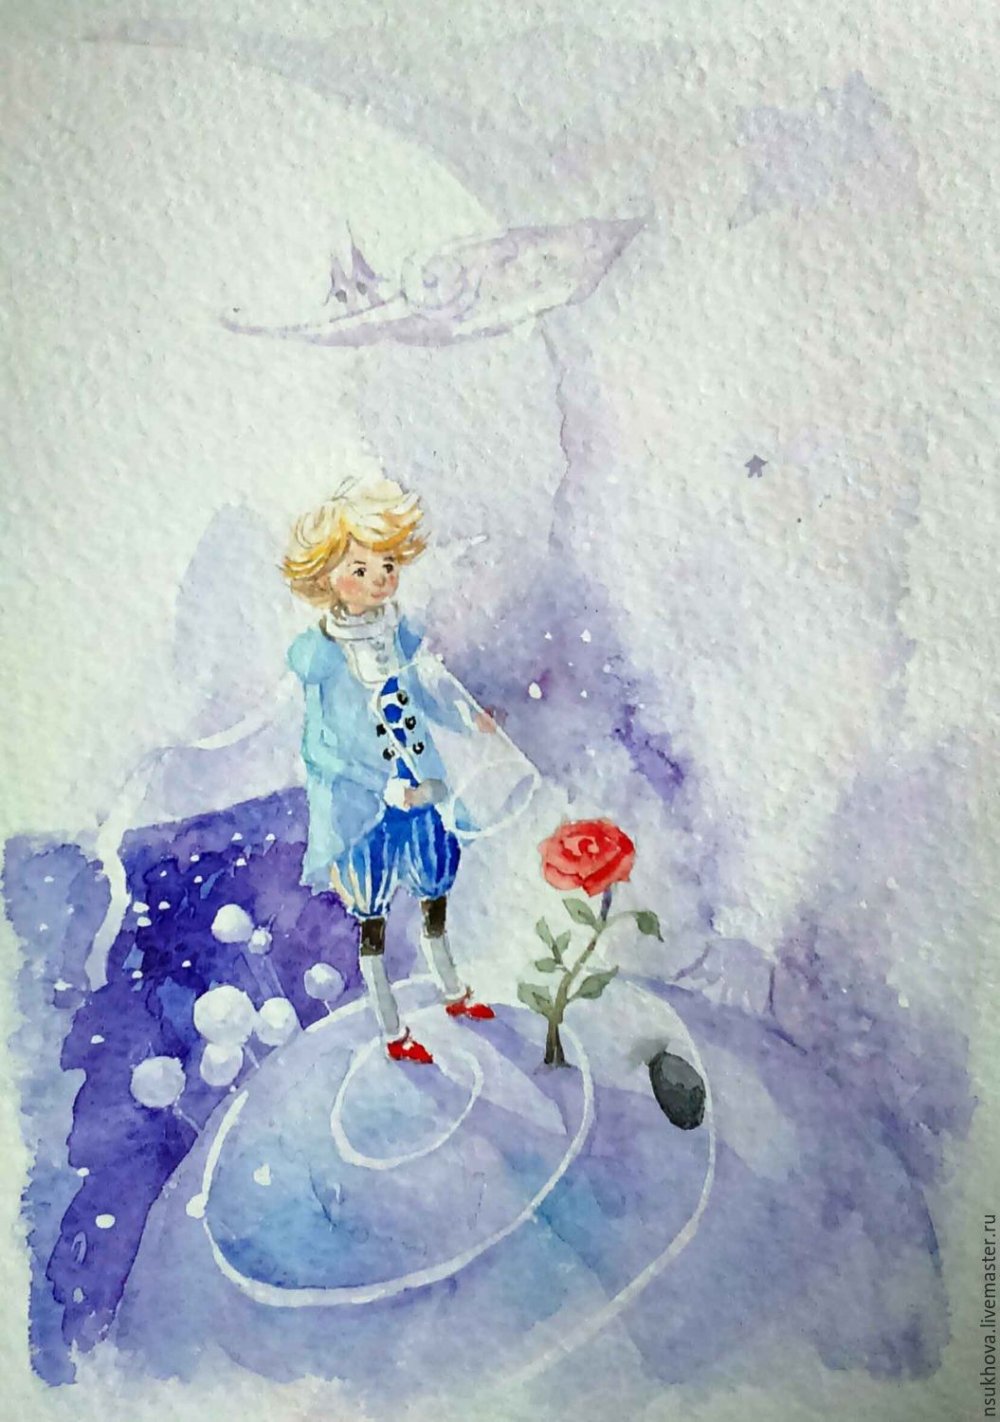 Маленький принц иллюстрации Экзюпери акварель